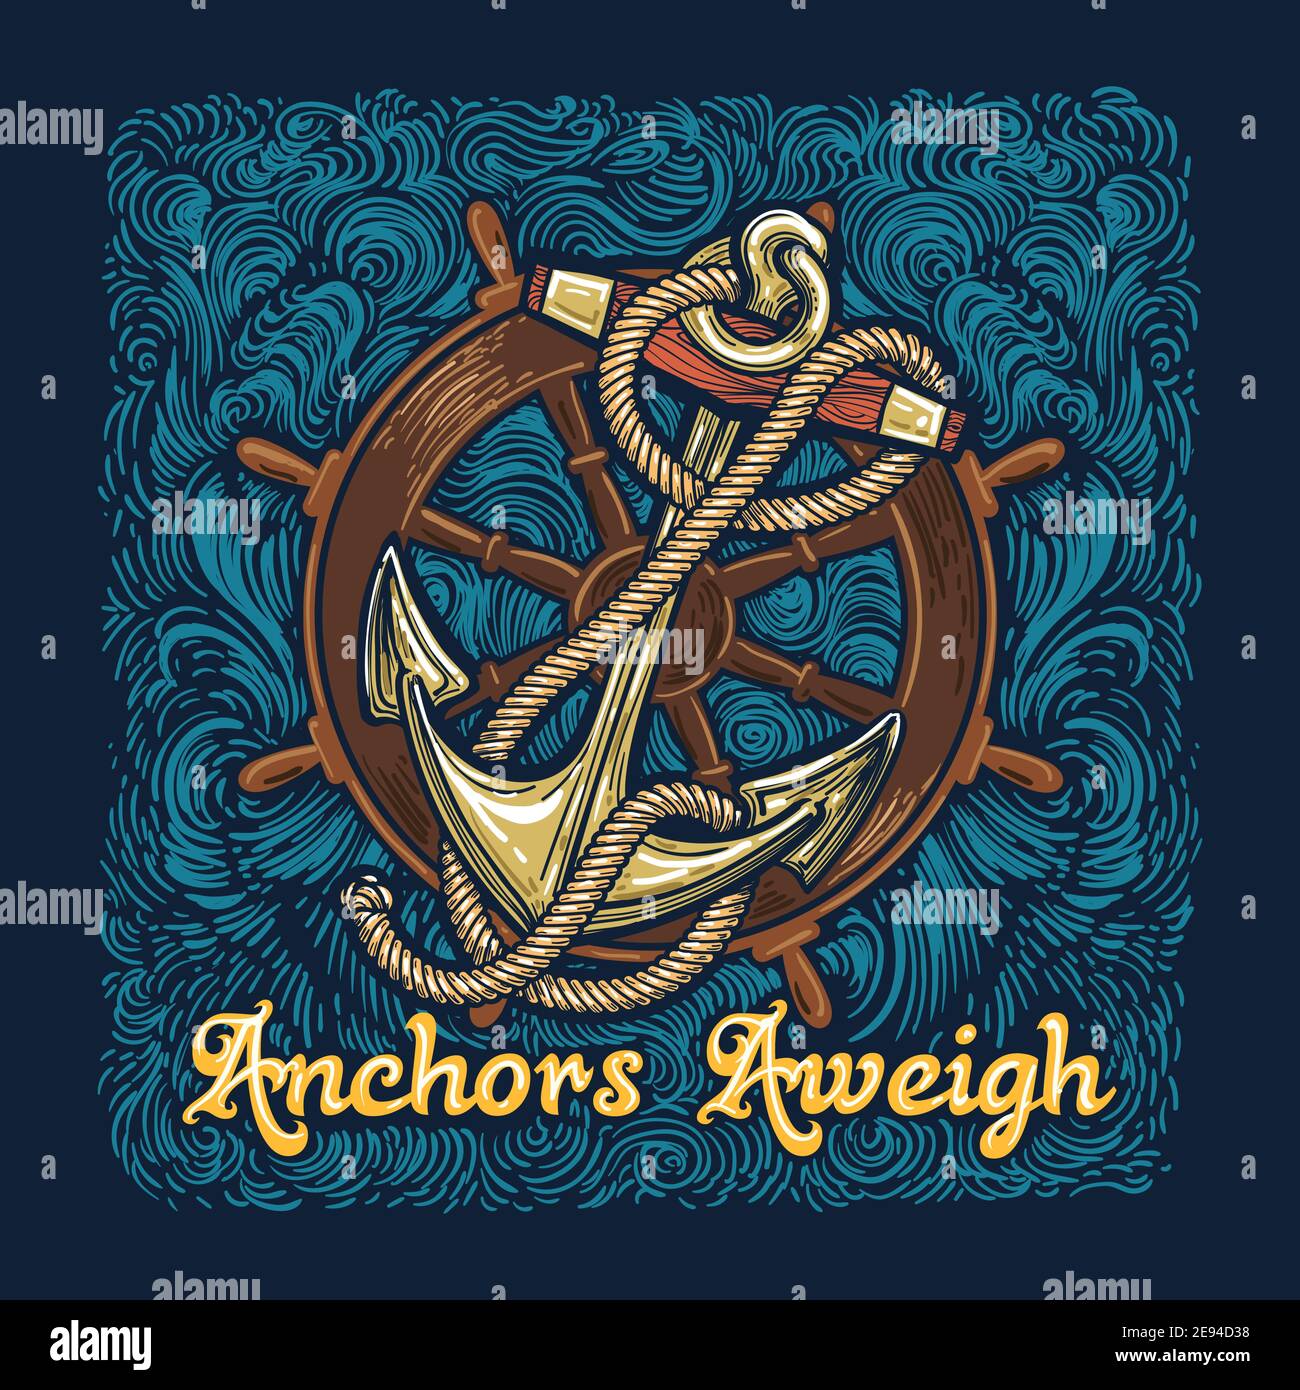 Anchors Aweigh – Virtual Strides